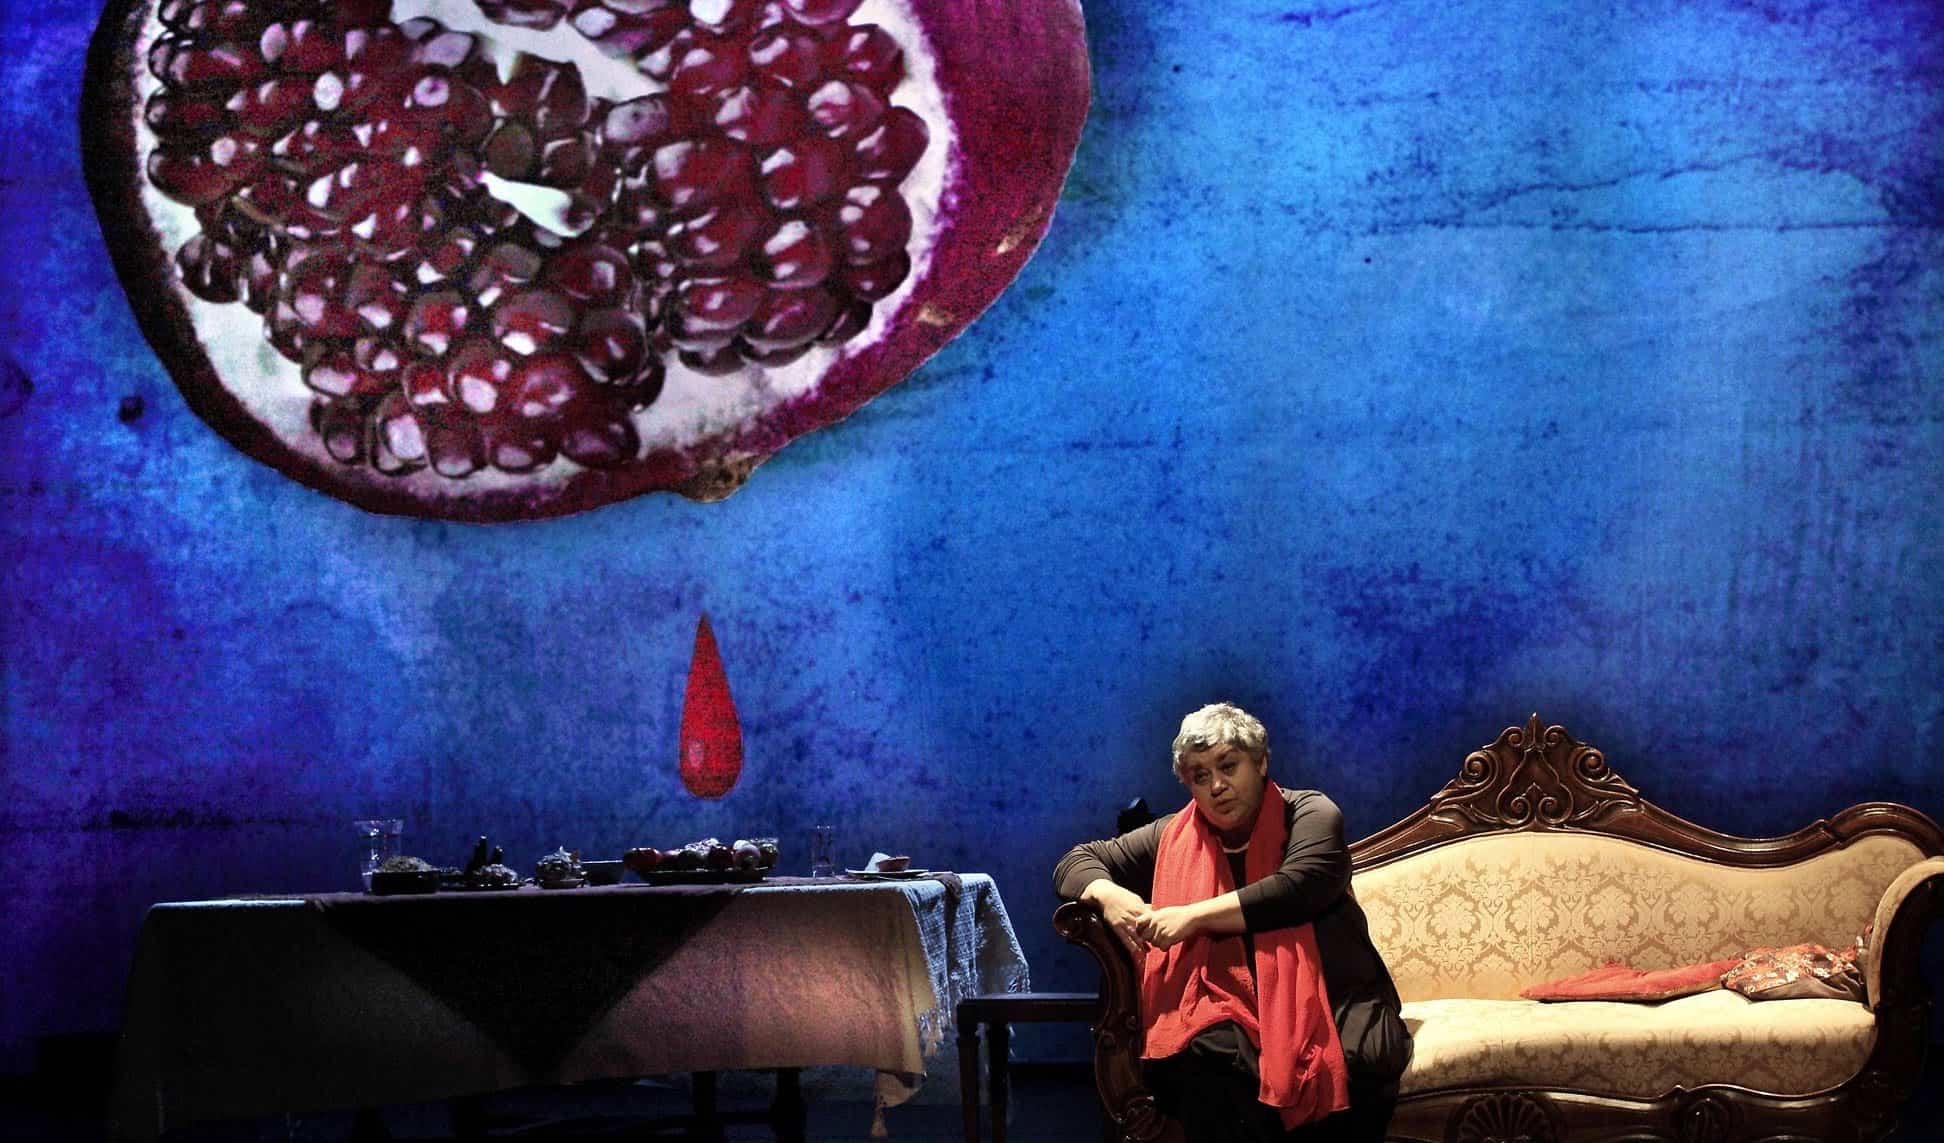 la bastrada di istambul è una commedia teatrale che si terrà a Grado al teatro Pasolini il 13 marzo 2017 alle ore 21.00